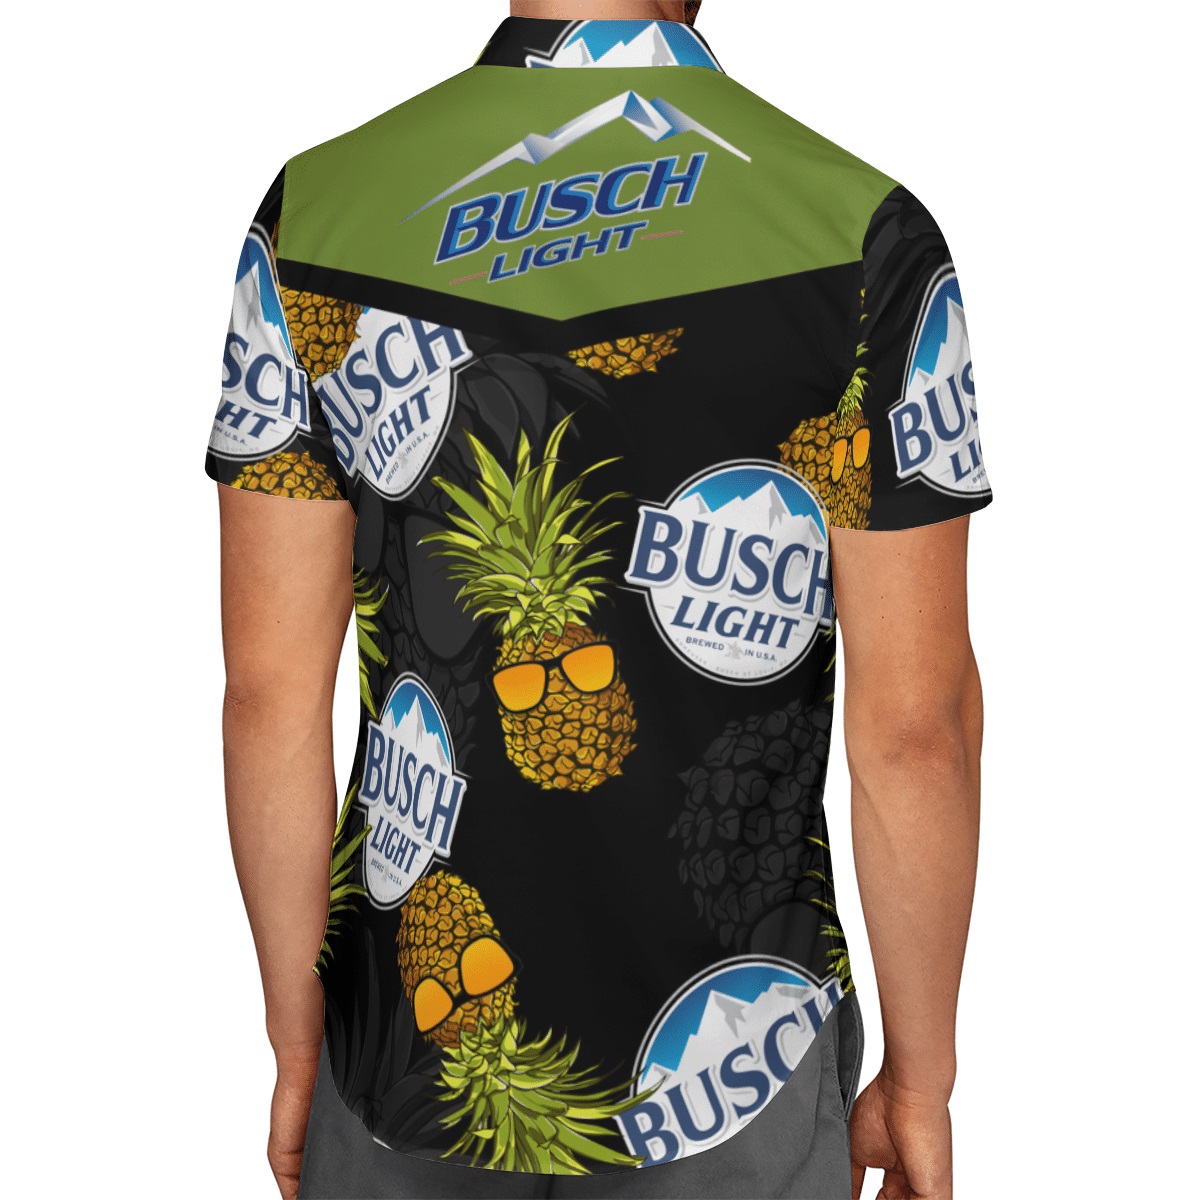 Busch Light pineapple hawaiian shirt - Picture 2